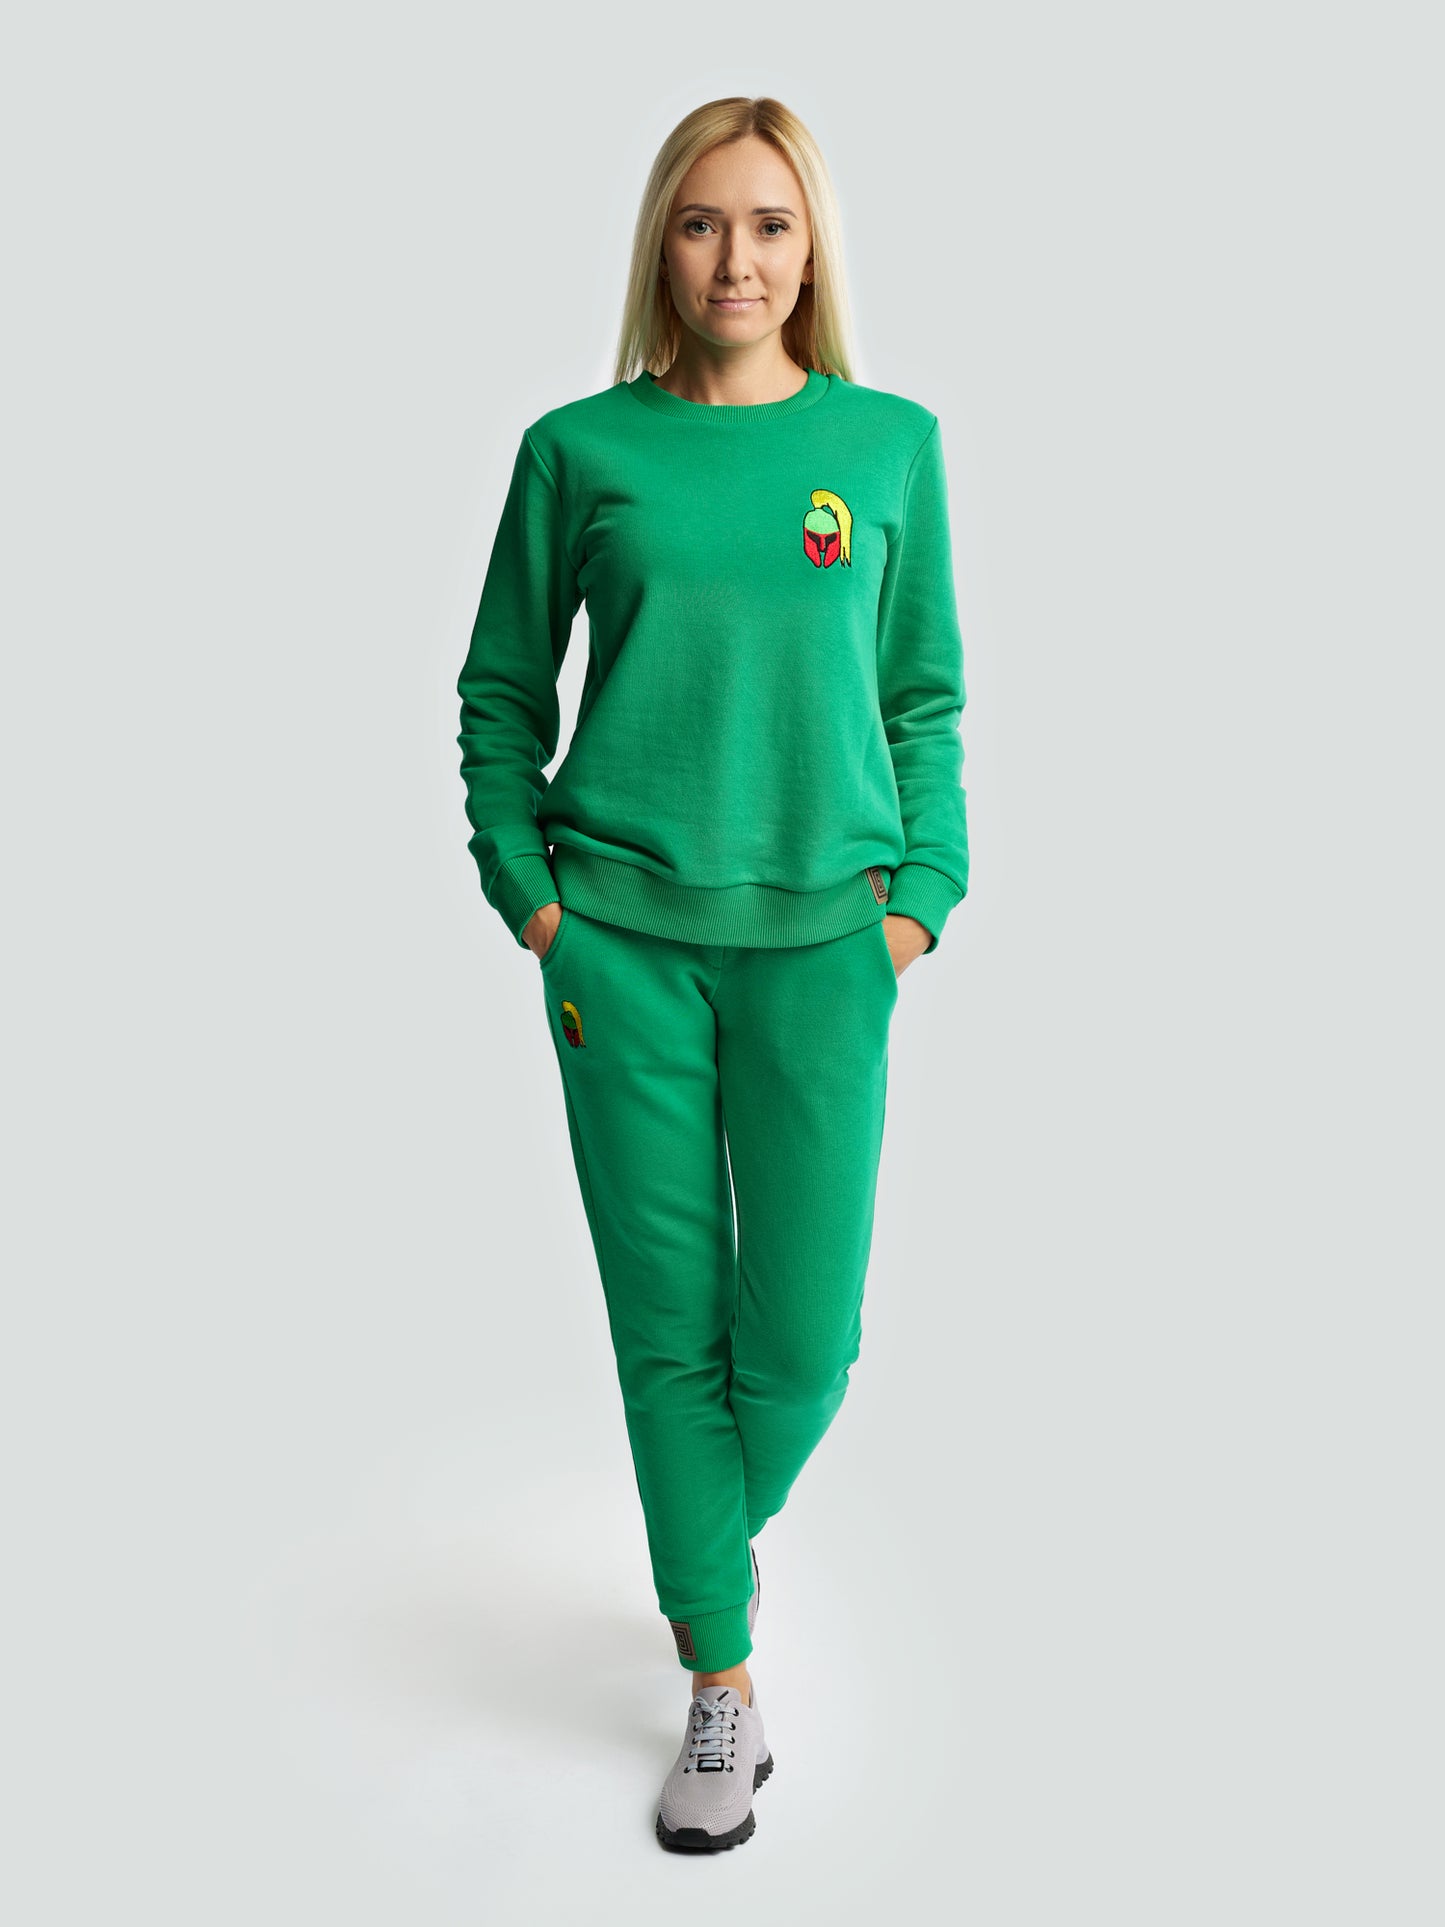 Žalias laisvalaikio kostiumėlis moterims "Los Lituanos" su siuvinėta trispalve - Losmados